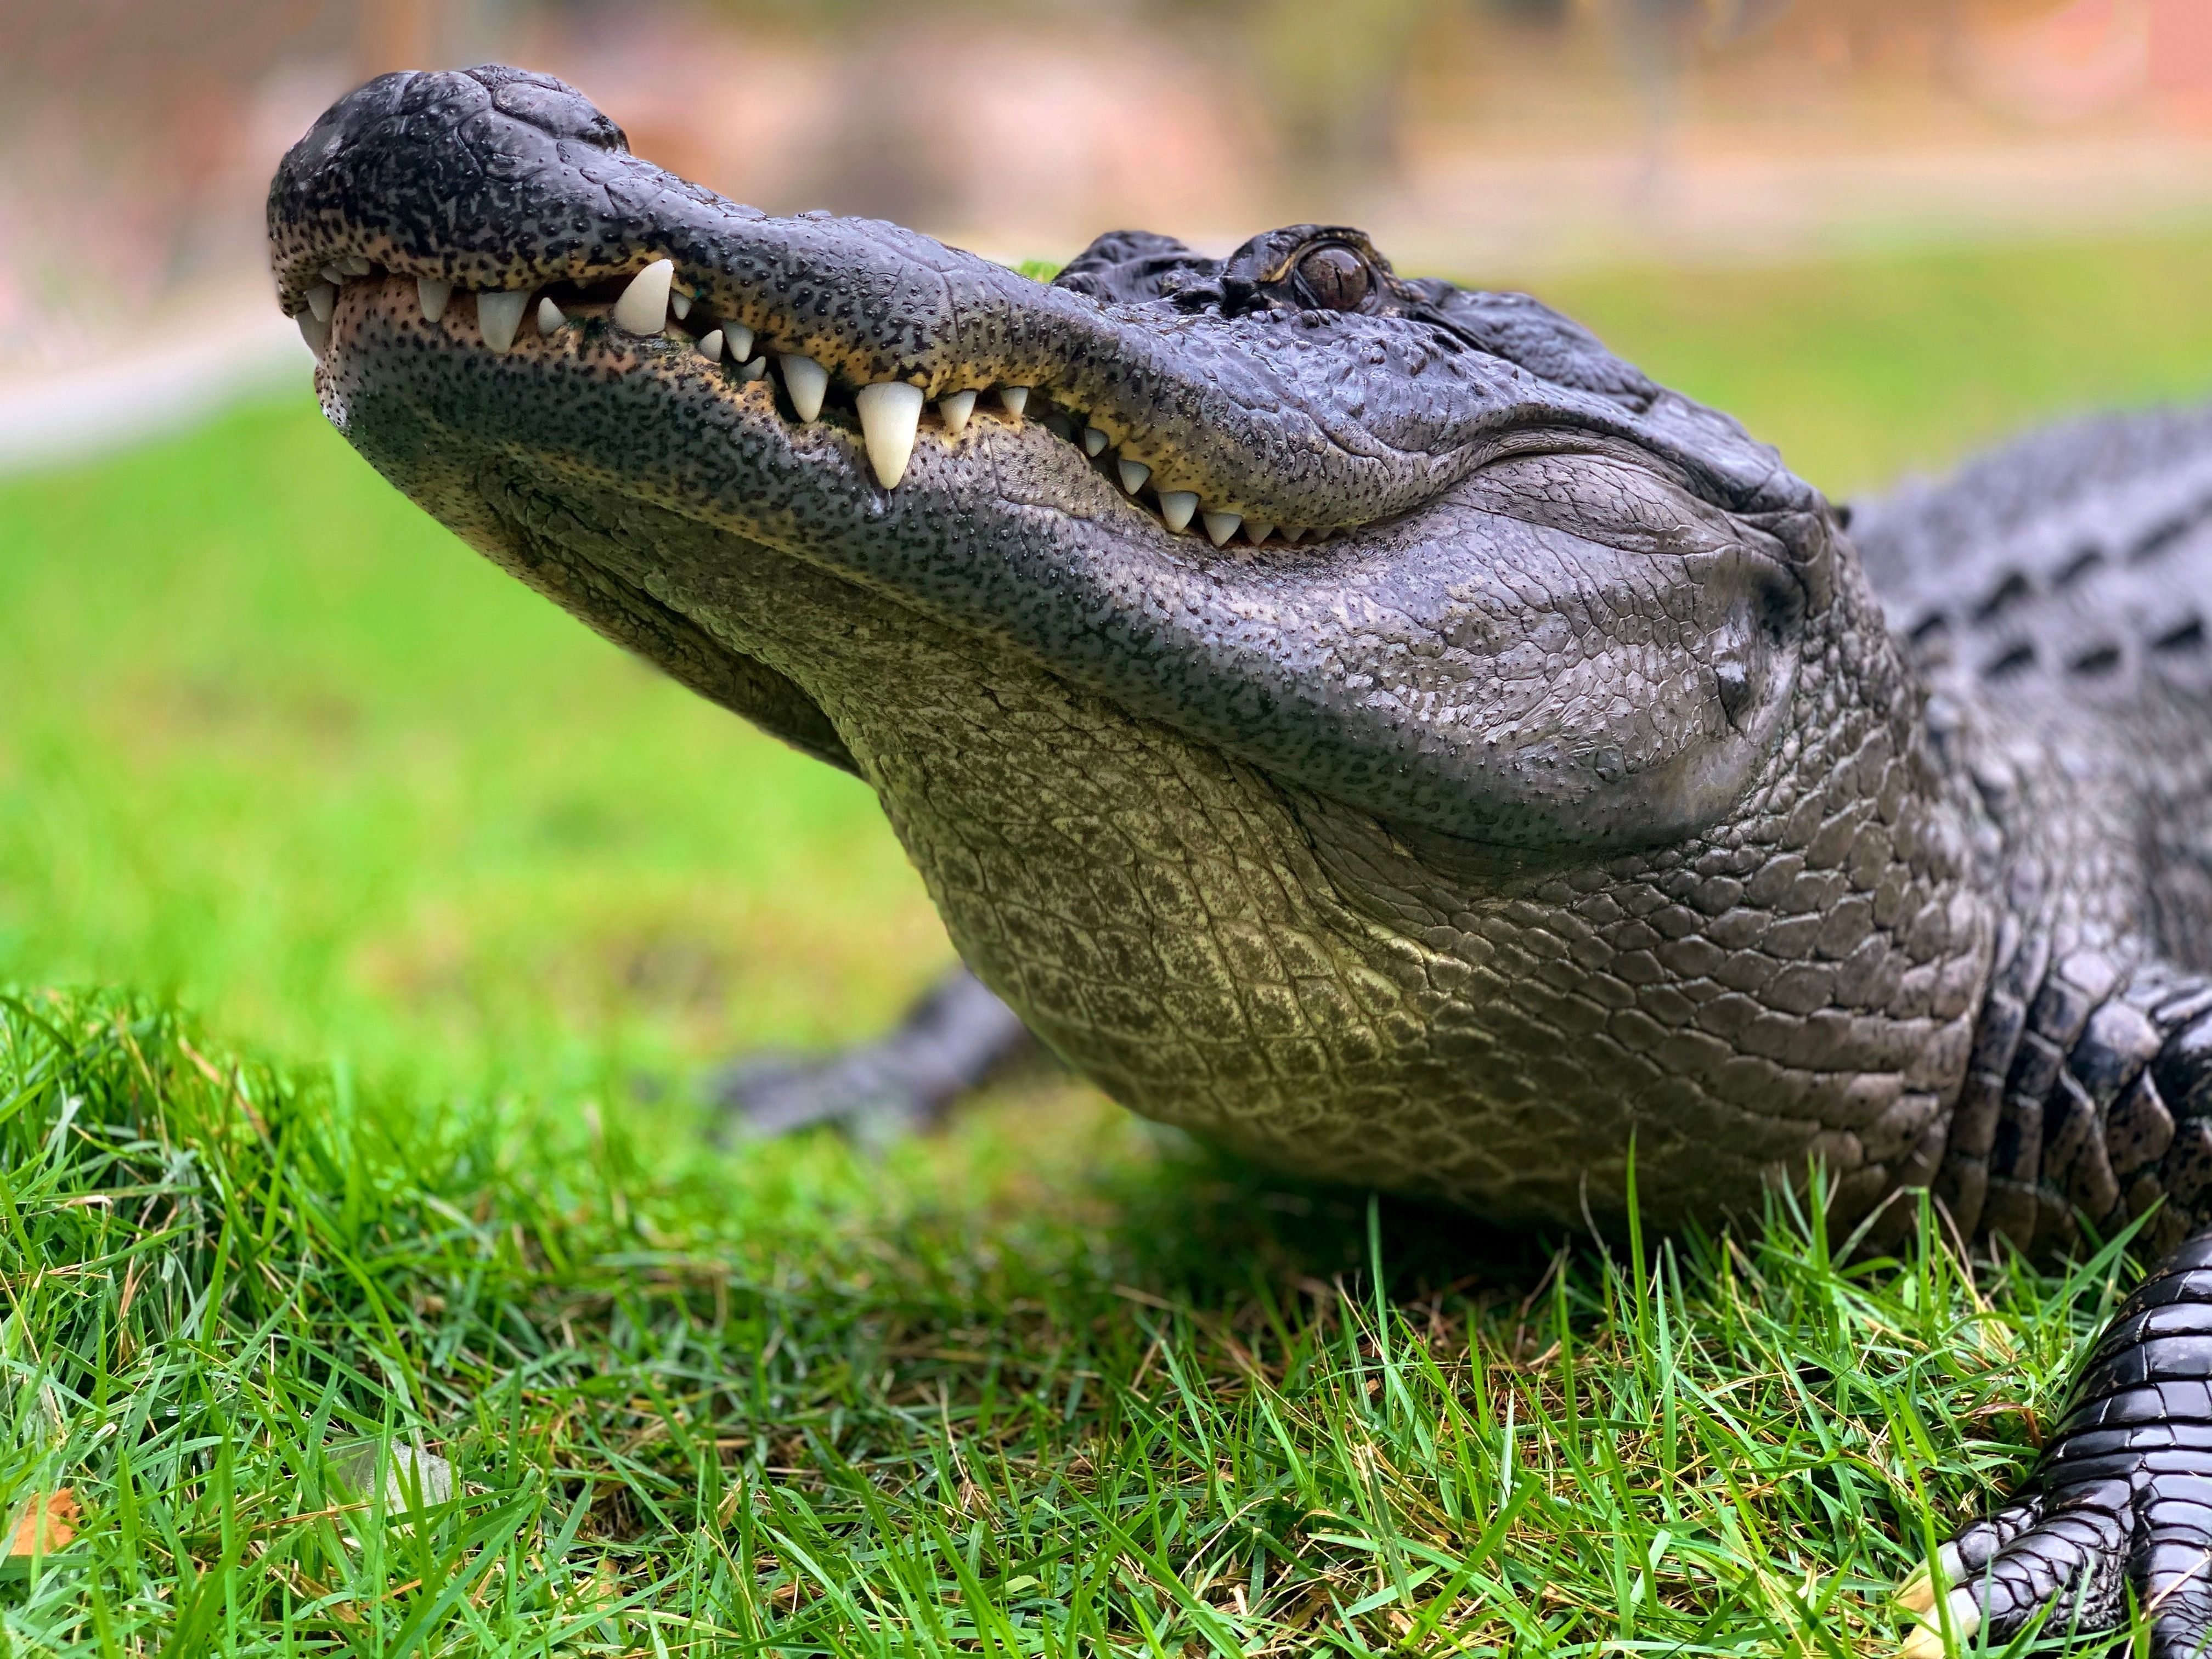 В канализации под городом обнаружили крокодила весом 197 килограммов